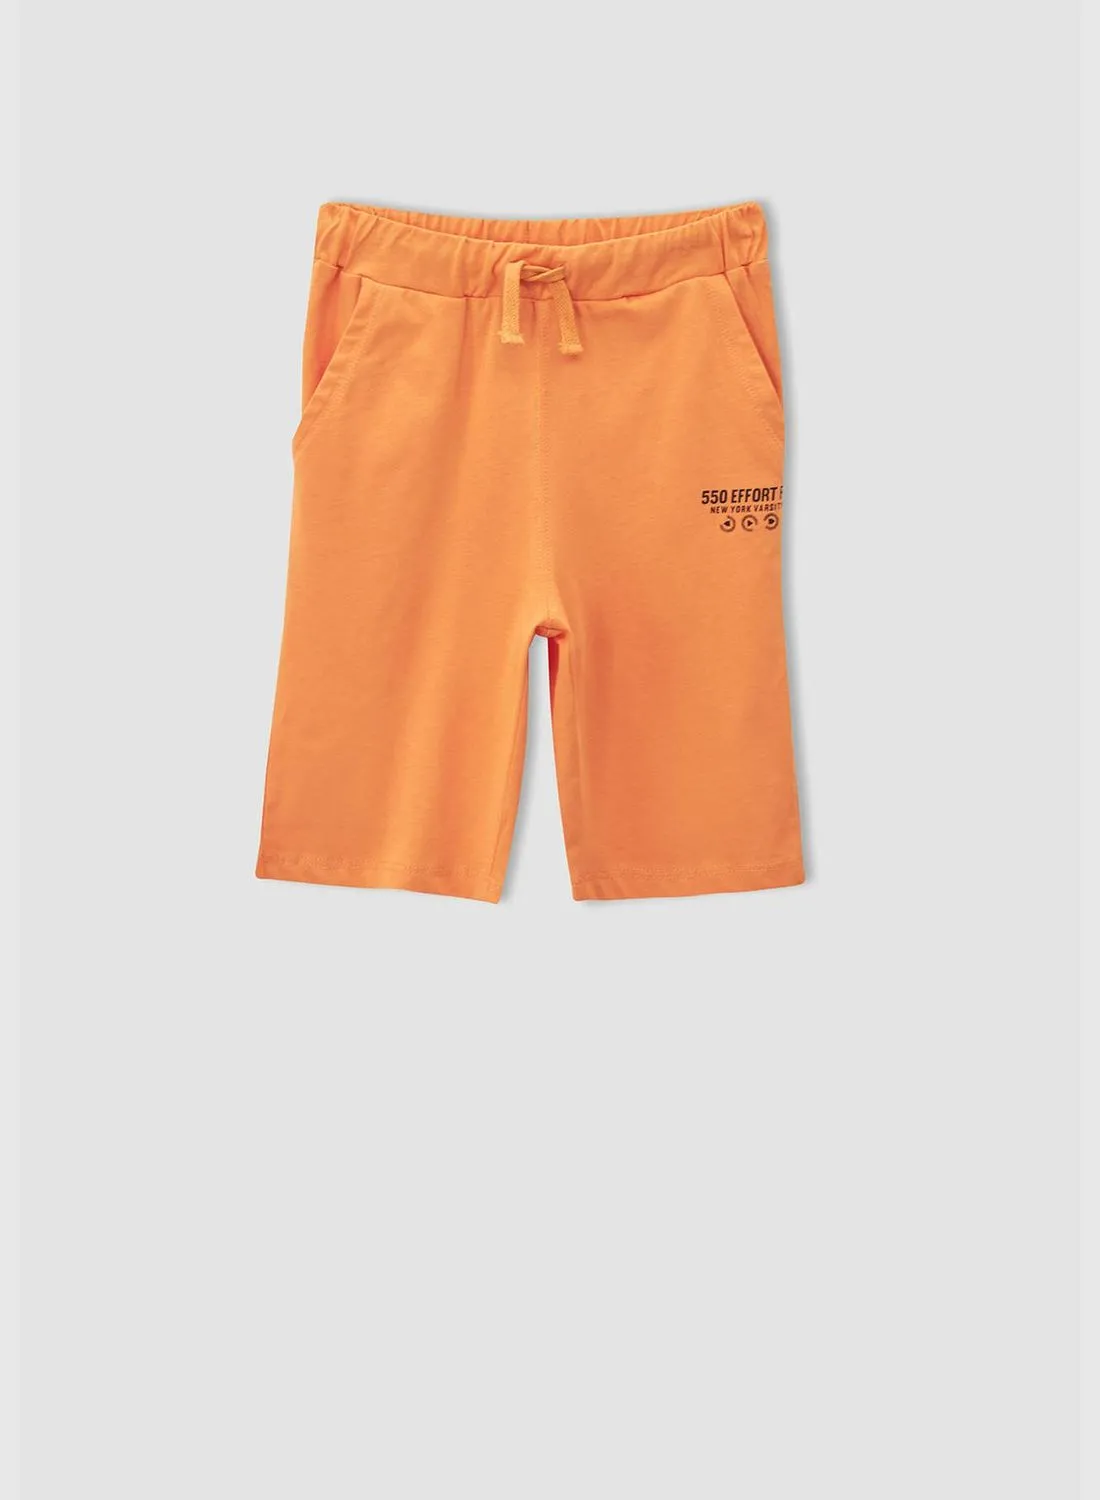 DeFacto Printed Drawstring Bermuda Shorts